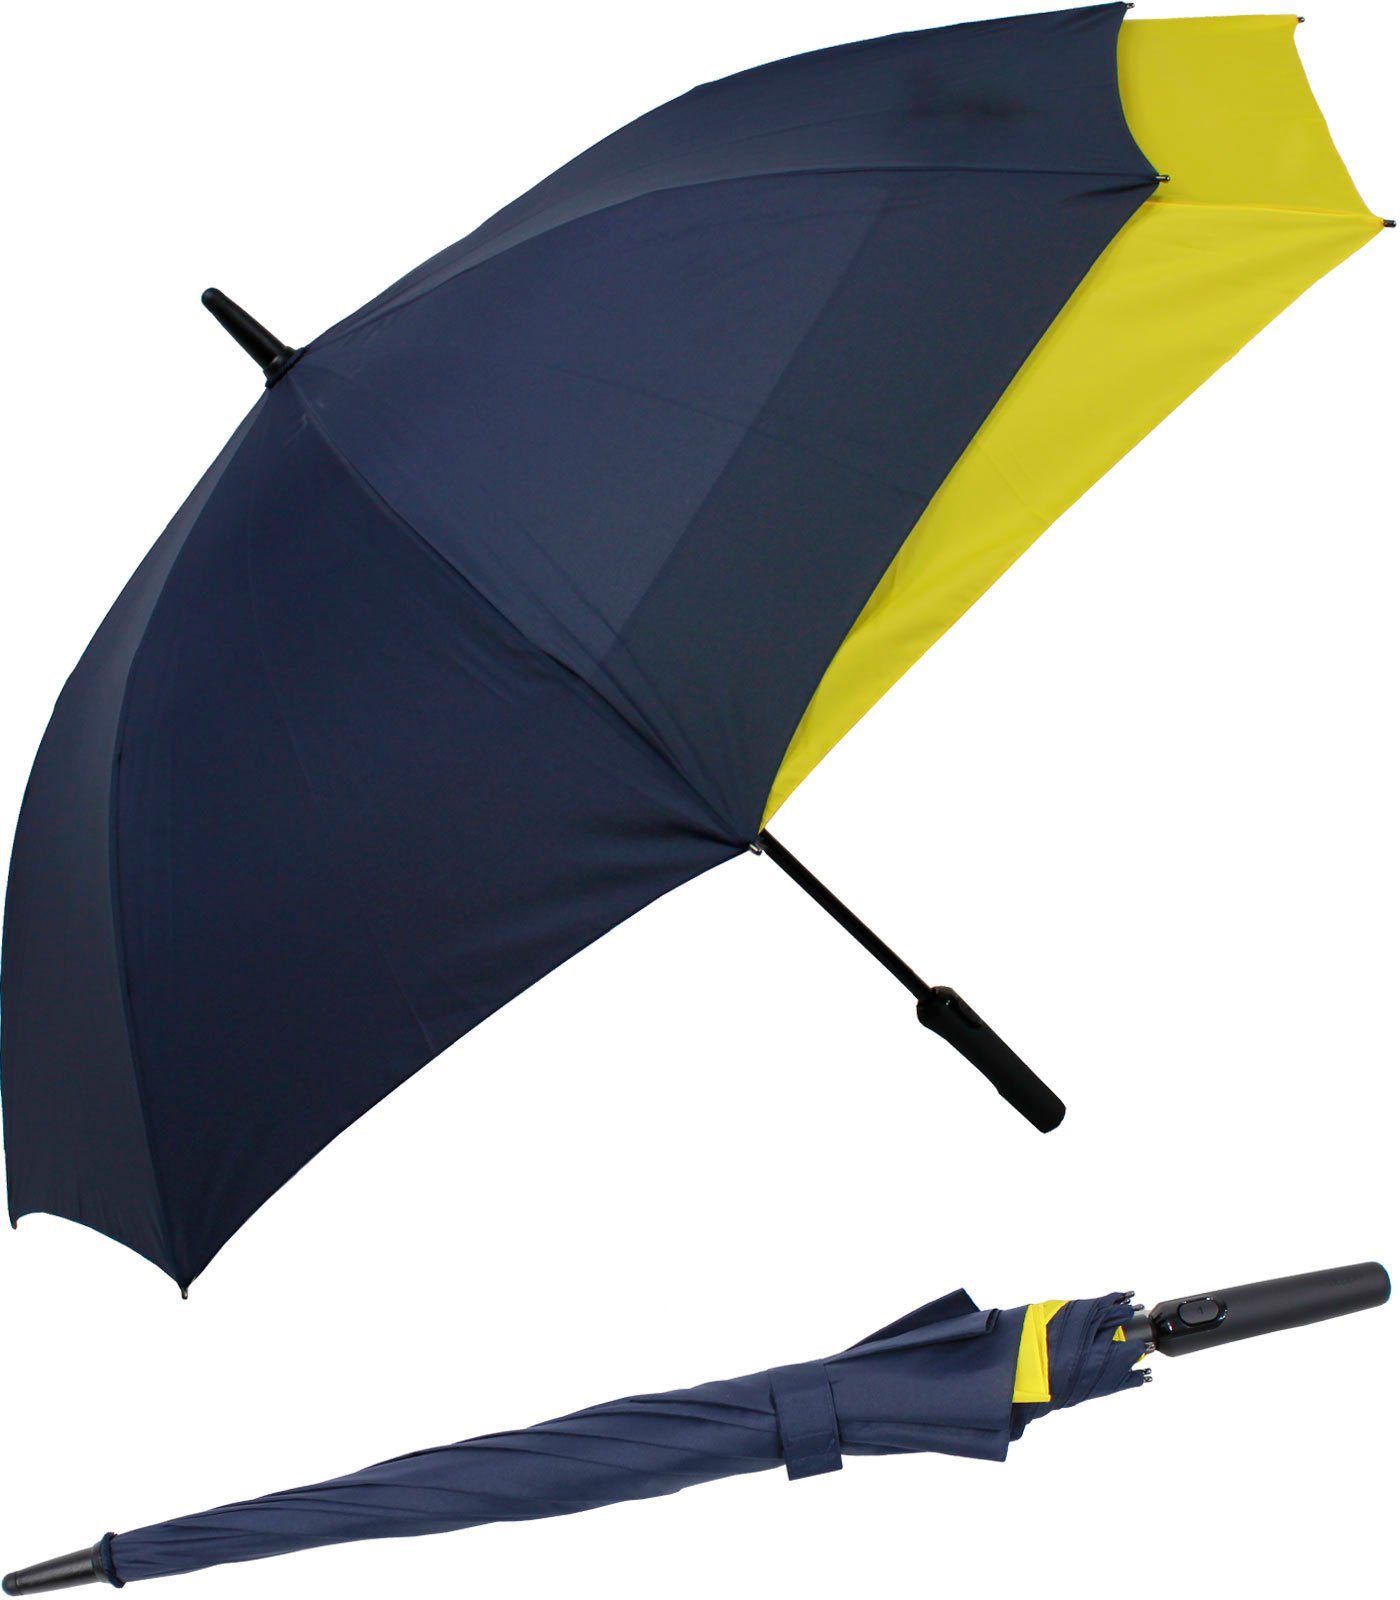 doppler® Langregenschirm Fiberglas mit Auf-Automatik - Move to XL, vergrößert sich beim Öffnen für mehr Schutz vor Regen navyblau-gelb